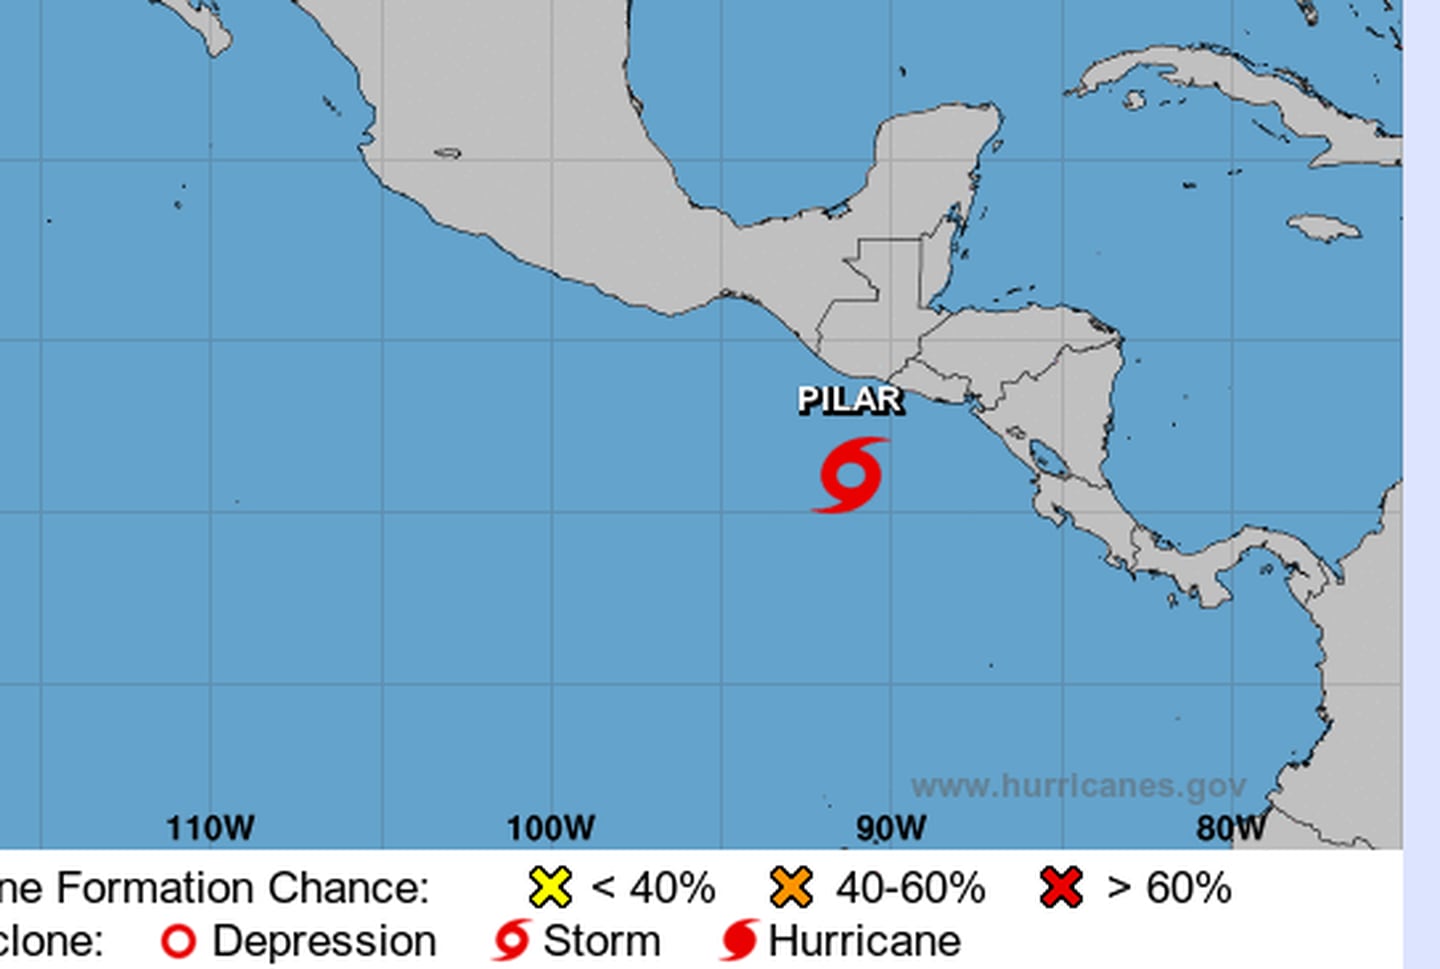 La tormenta tropical Pilar se mueve hacia el istmo y nuestro país tendrá efectos indirectos, según las proyecciones del Centro Nacional de Huracanes . Imagen: Centro Nal. de Huracanes.